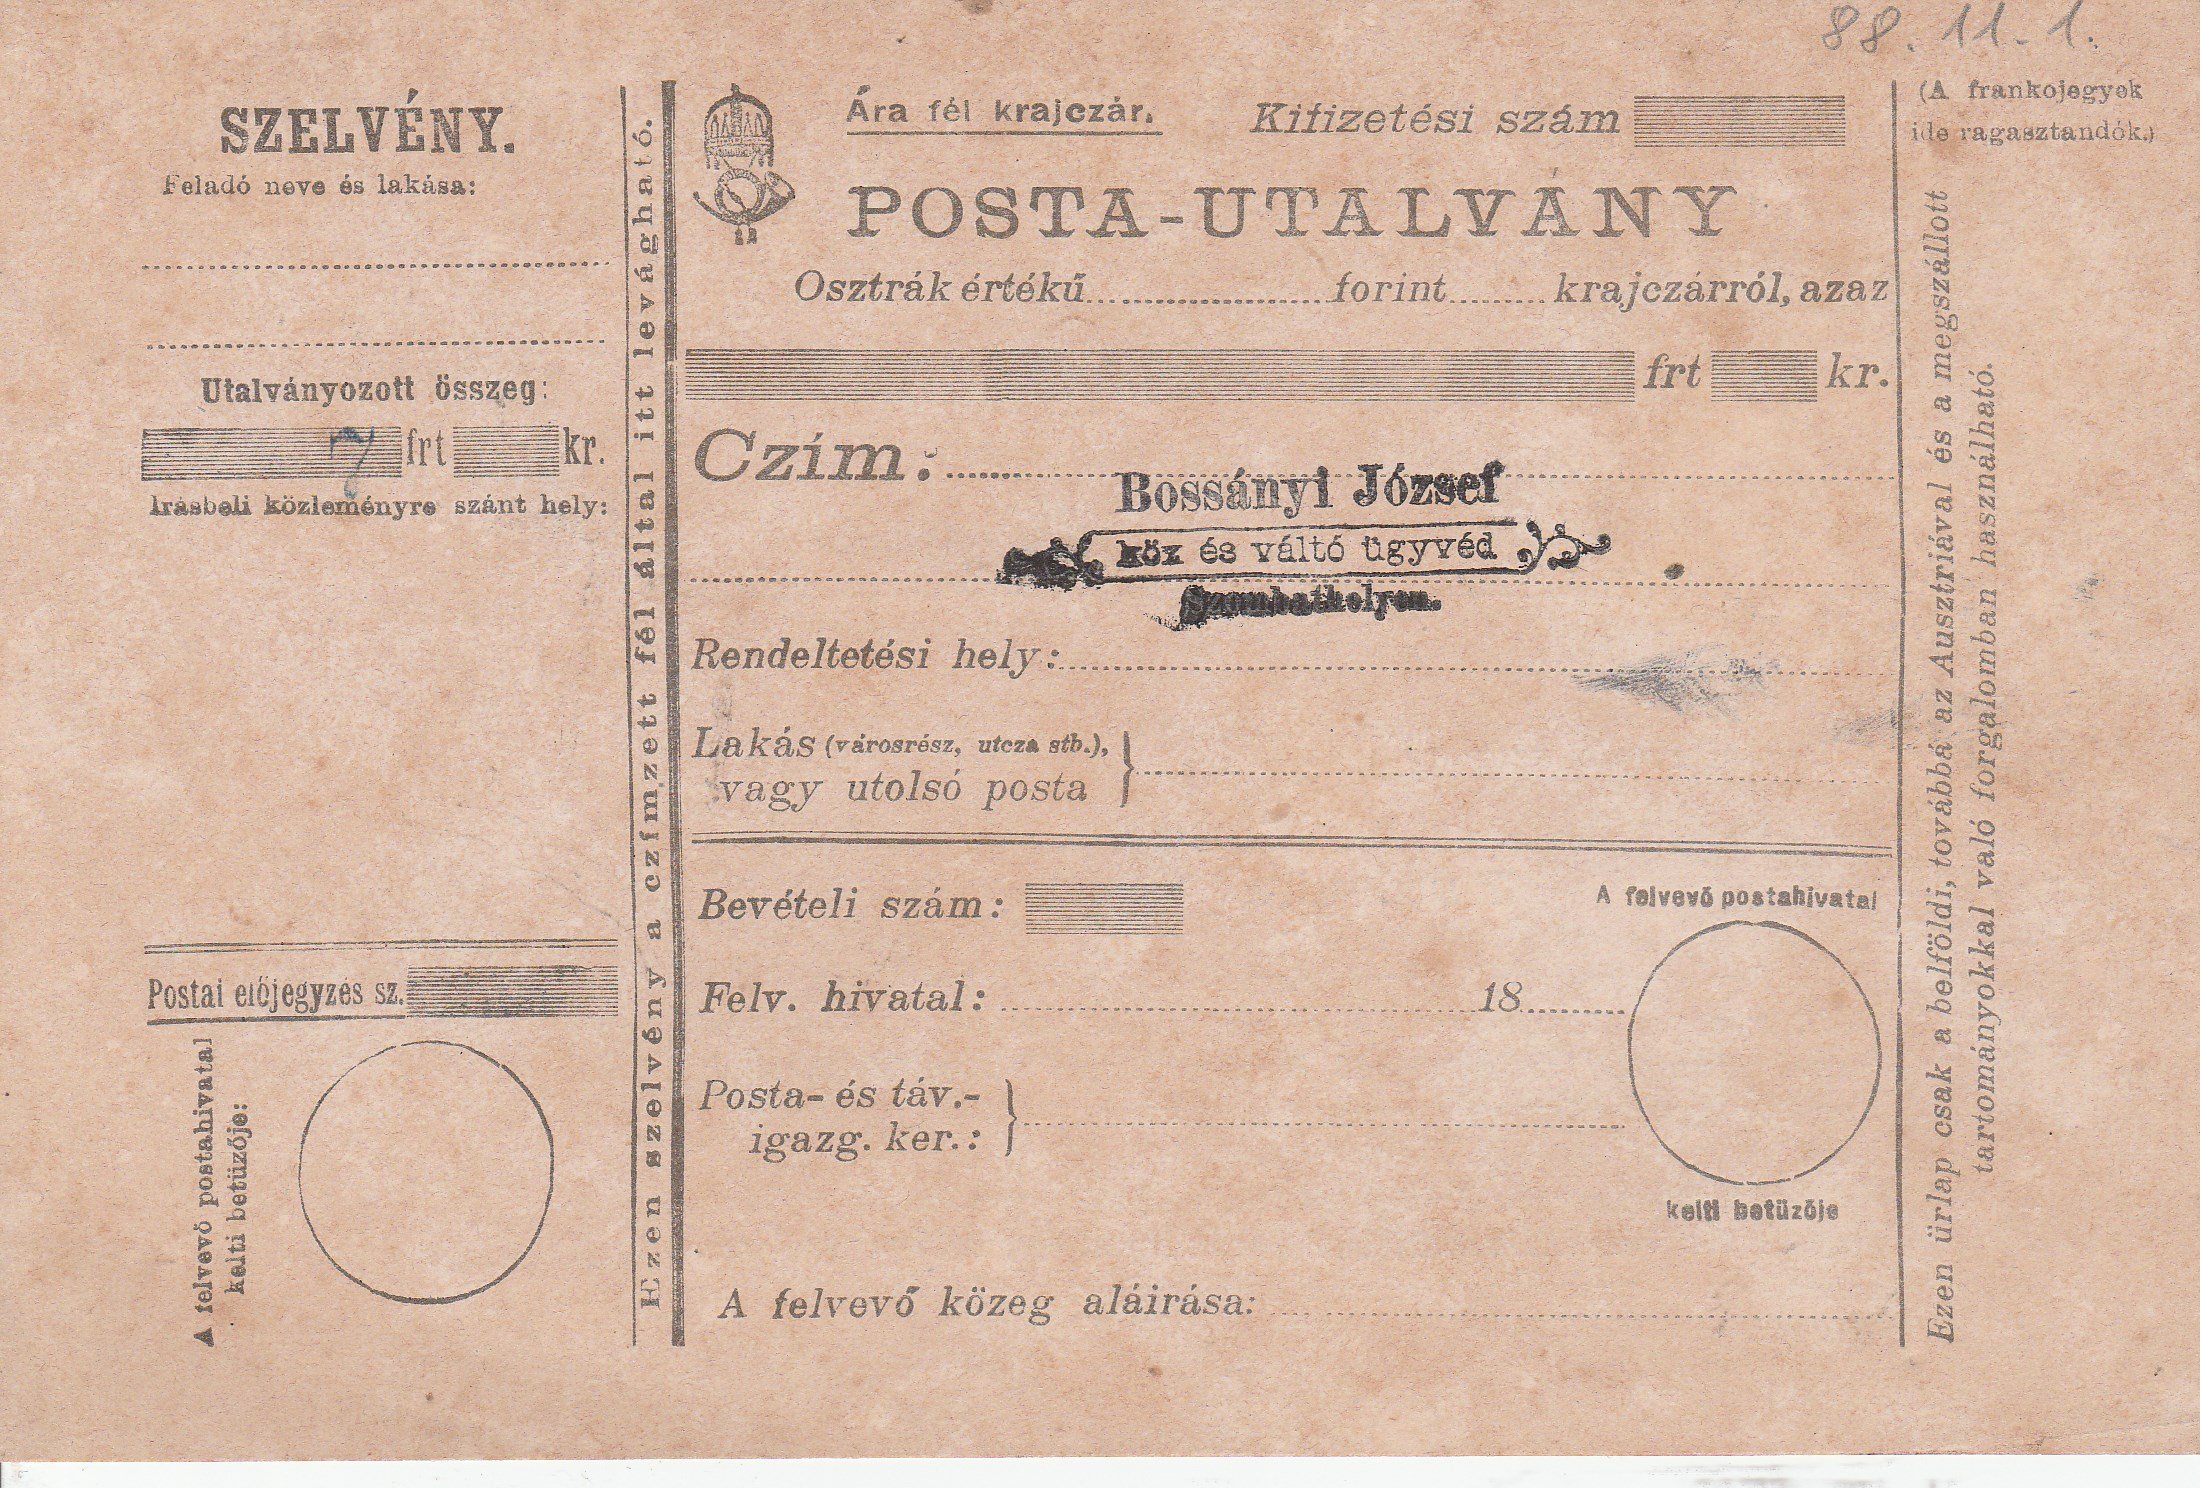 Postautalvány a 19. század végéről (Tapolcai Városi Múzeum CC BY-NC-SA)